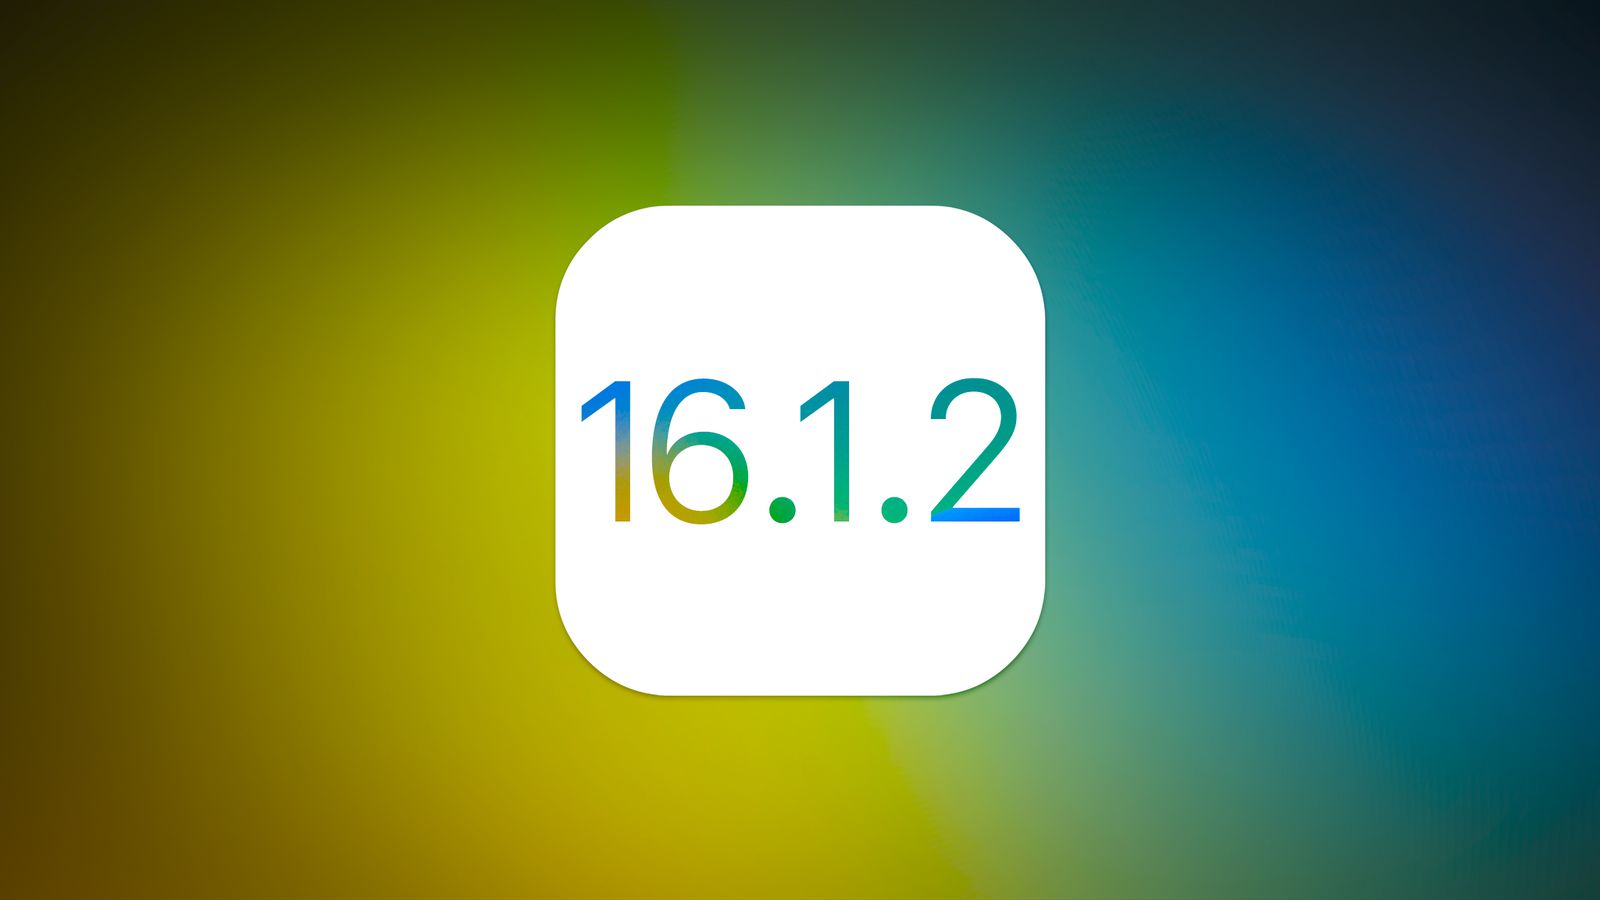 Вышла iOS 16.1.2